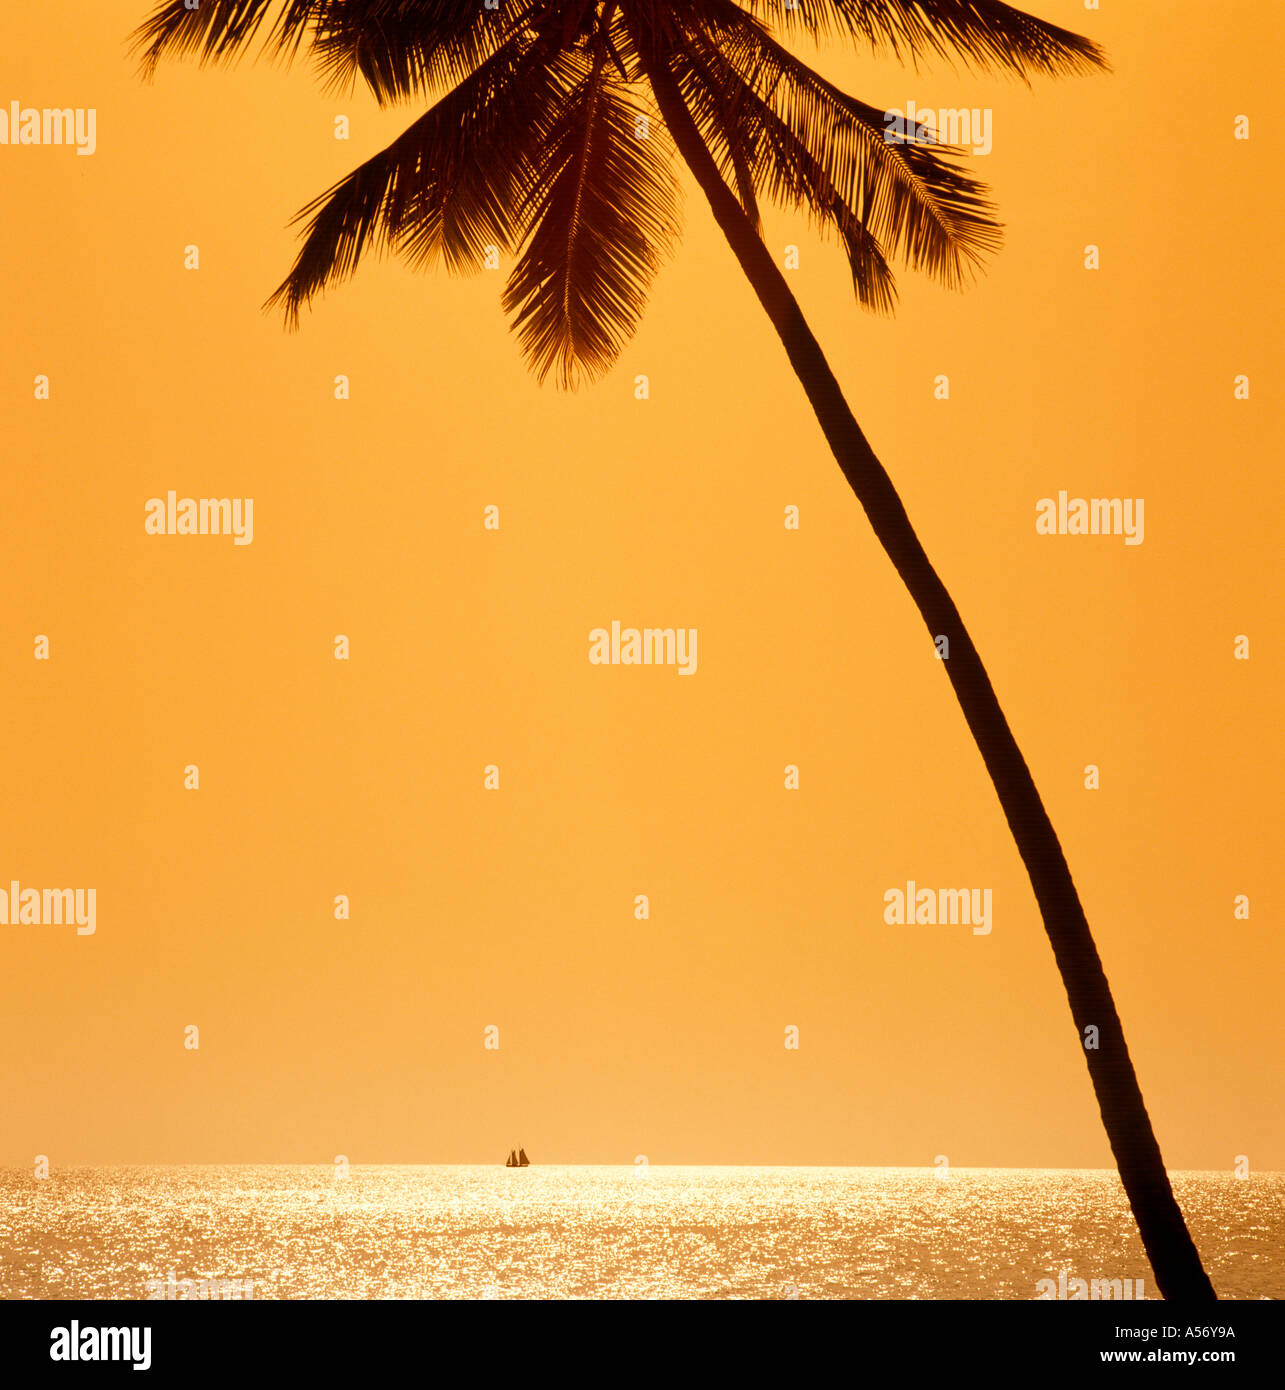 Au coucher du soleil, une goélette en bois plage, Antigua, Antilles, Caraïbes Banque D'Images